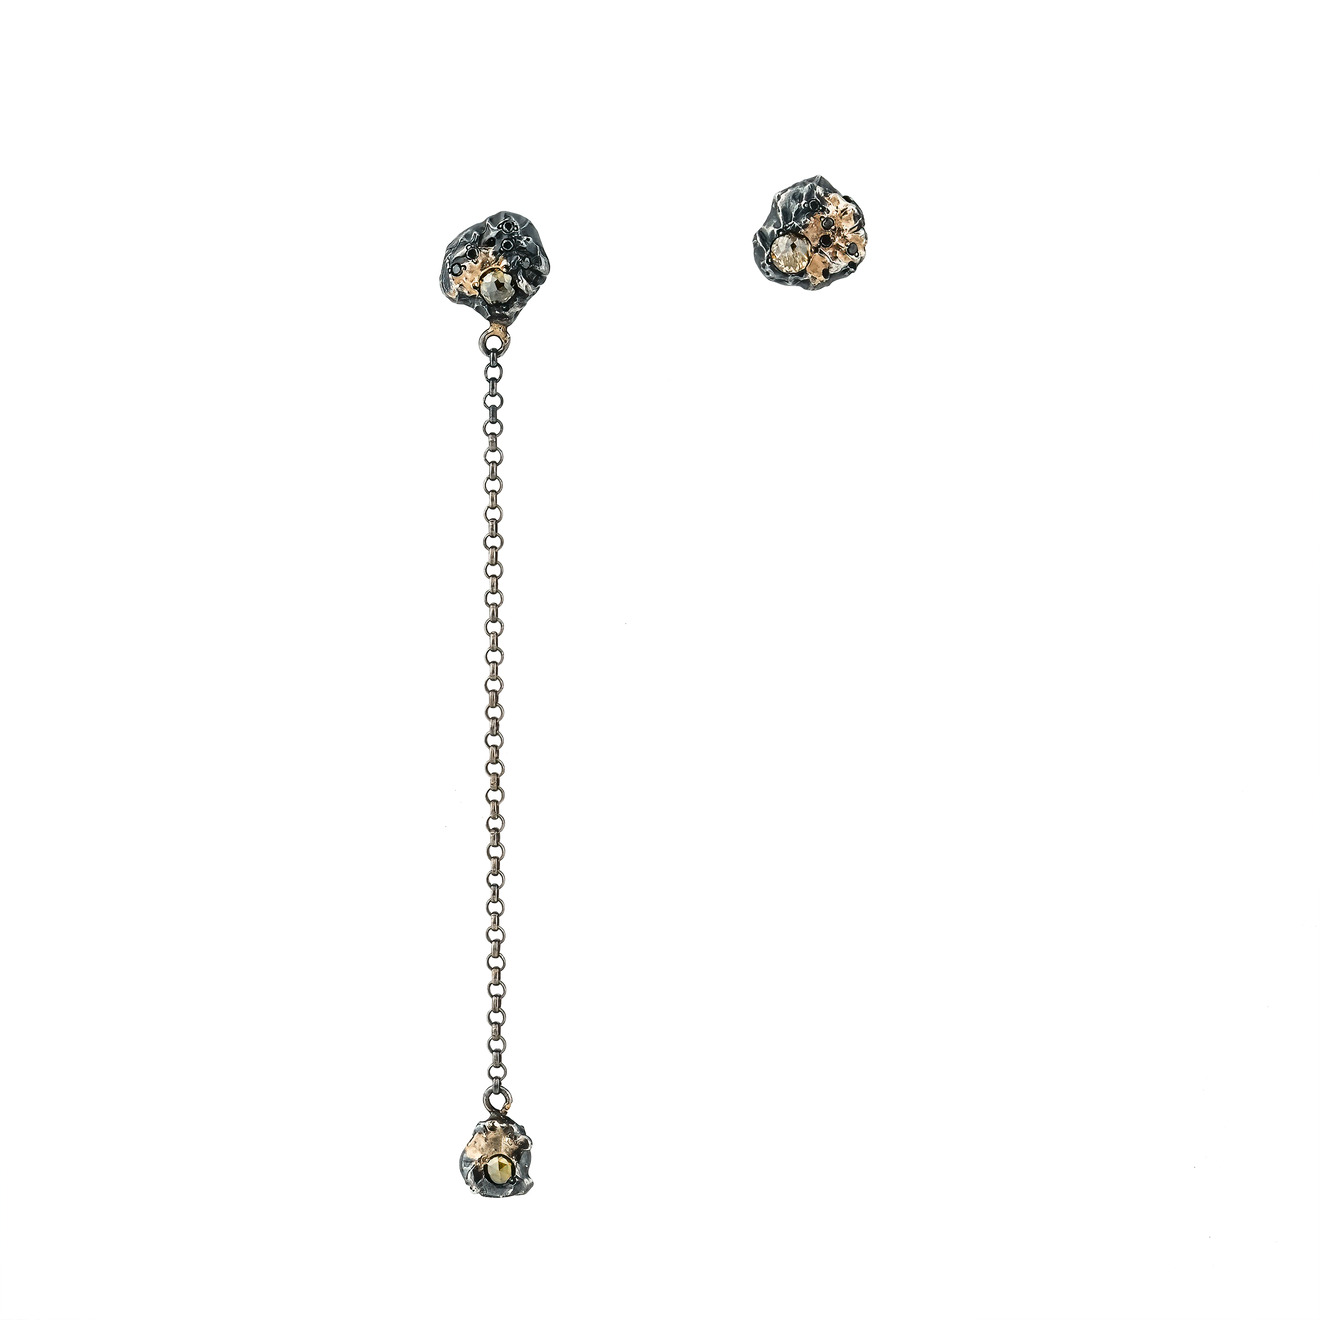 Kintsugi Jewelry Асимметричные серьги Rough diamond из серебра с позолотой и вставками из бриллиантов liya кольцо с позолотой и вставками из эмали